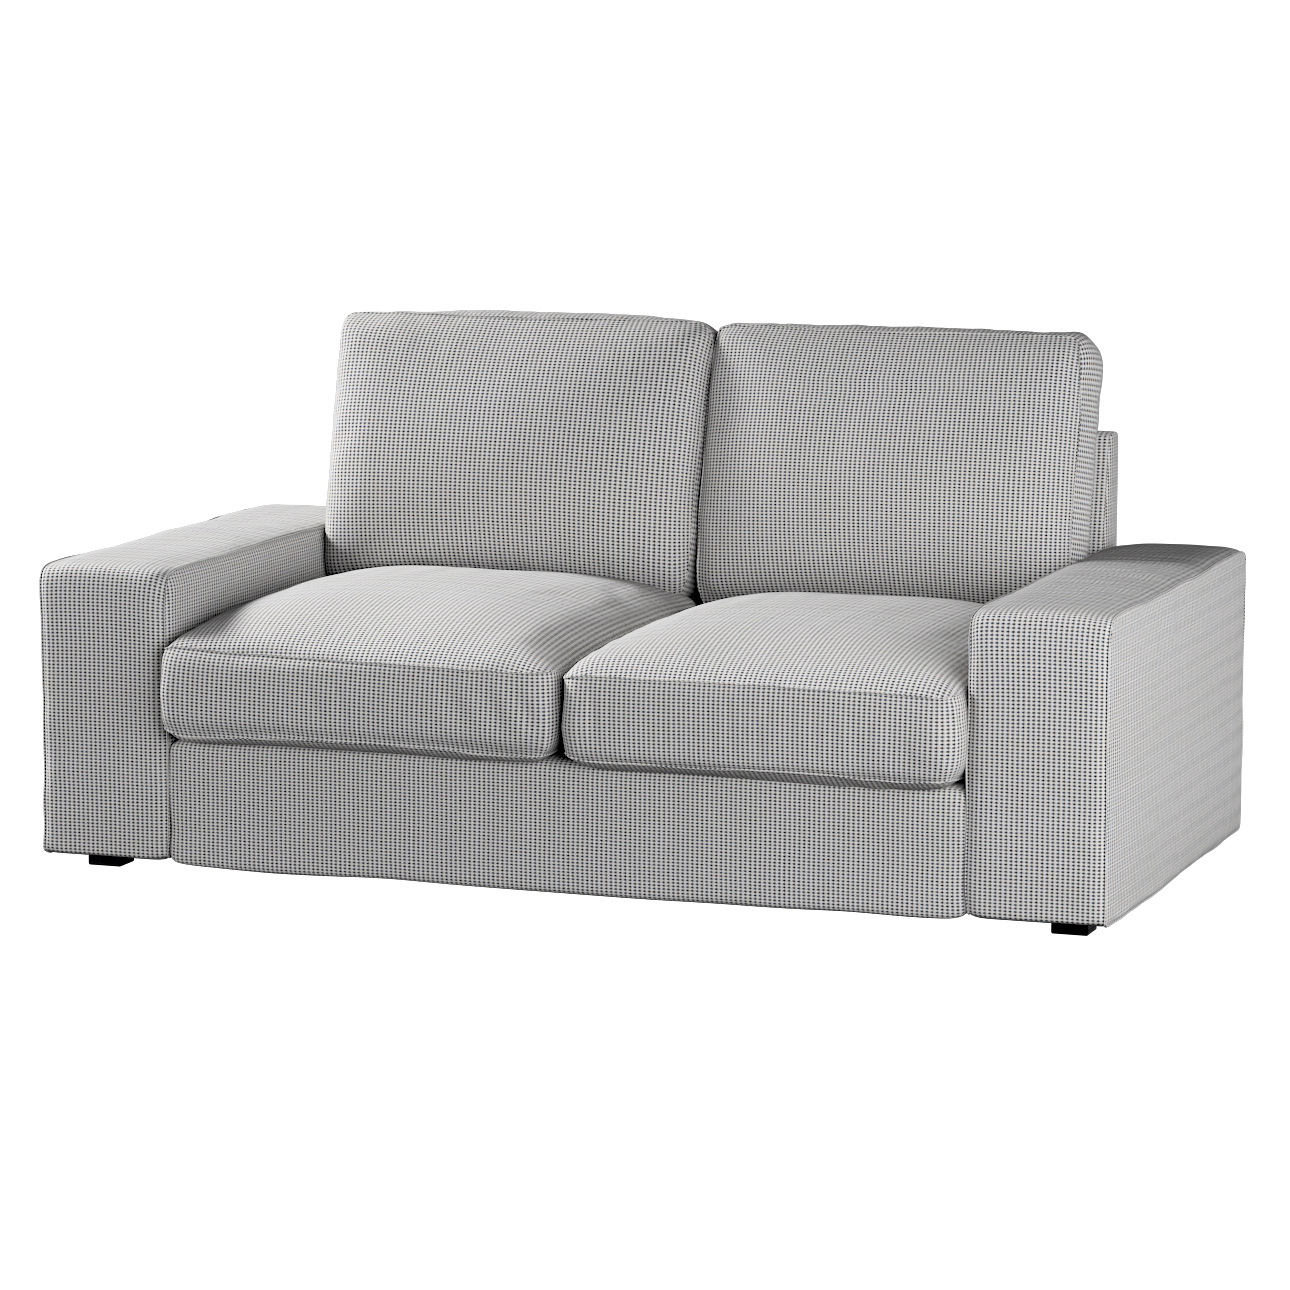 Bezug für Kivik 2-Sitzer Sofa, schwarz-beige, Bezug für Sofa Kivik 2-Sitzer günstig online kaufen